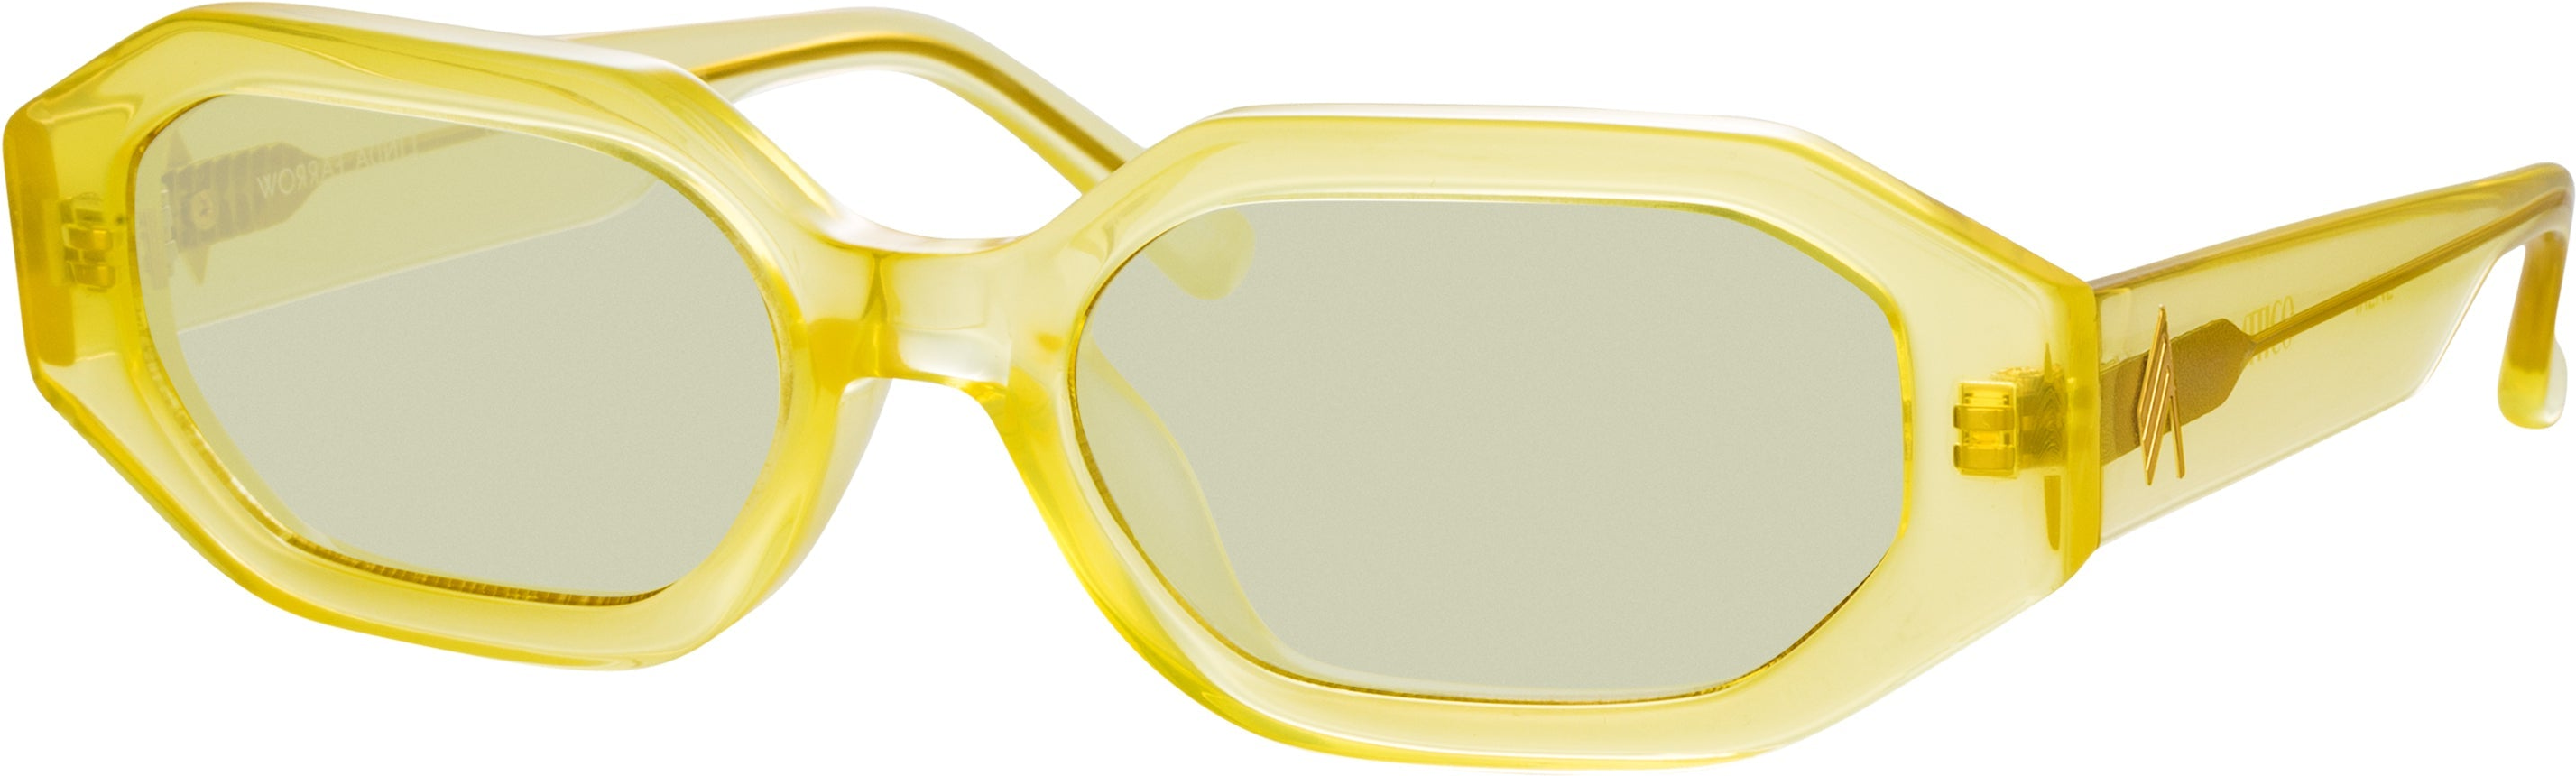 Color_ATTICO14C5SUN - The Attico Irene Angular Sunglasses in Yellow